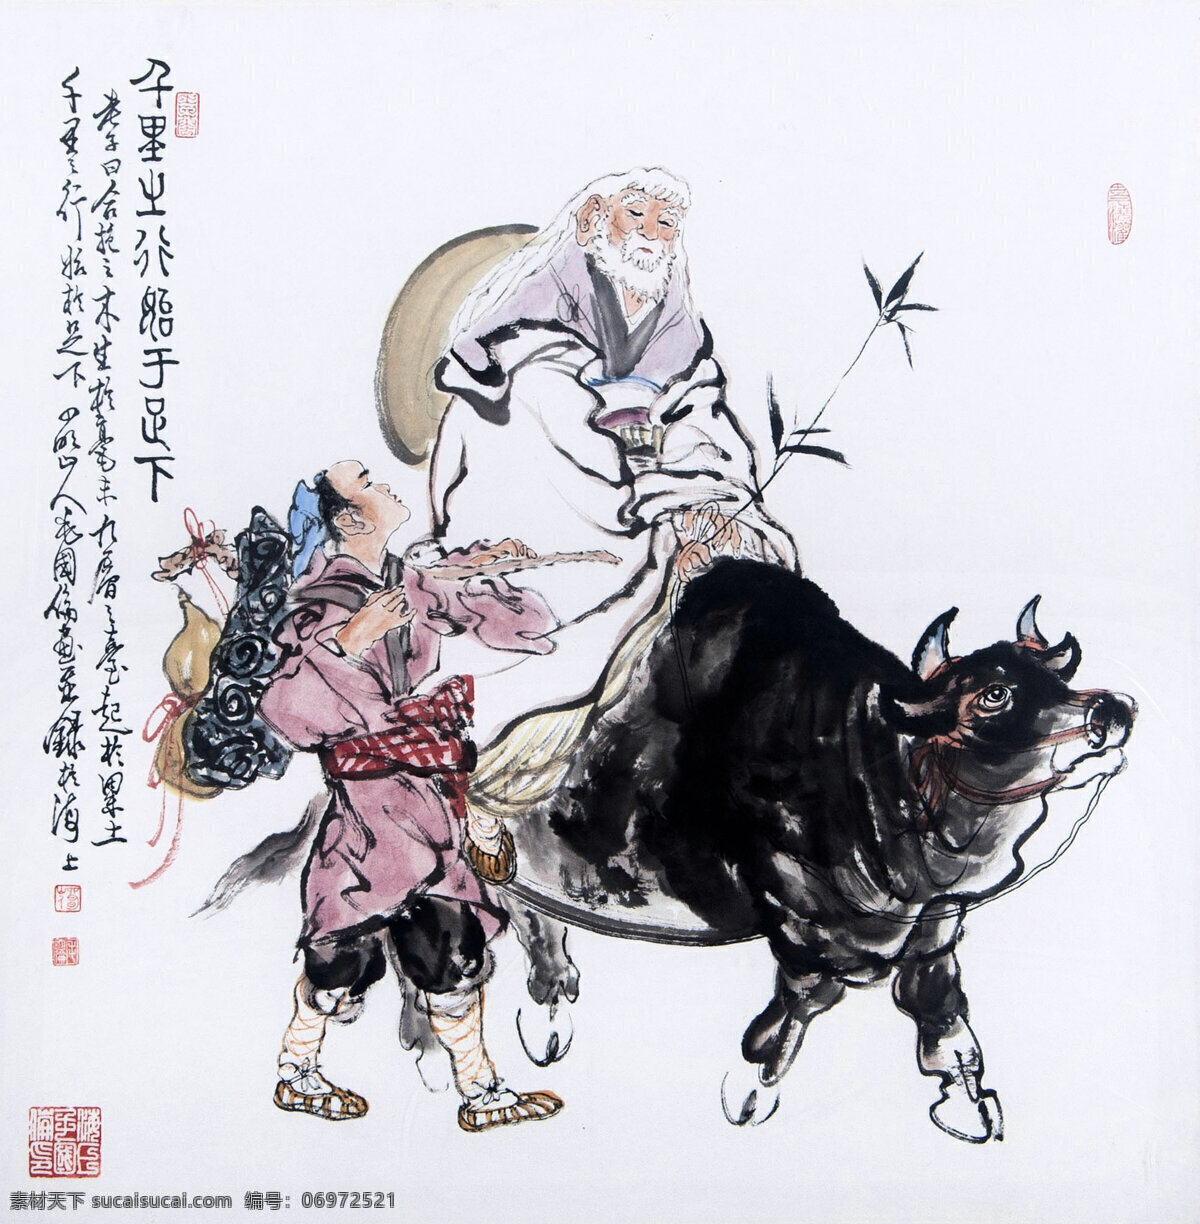 千里之行始于足下 毛国伦作品 老者 骑牛出行 牧童 葫芦 中国古代画 中国古画 绘画书法 文化艺术